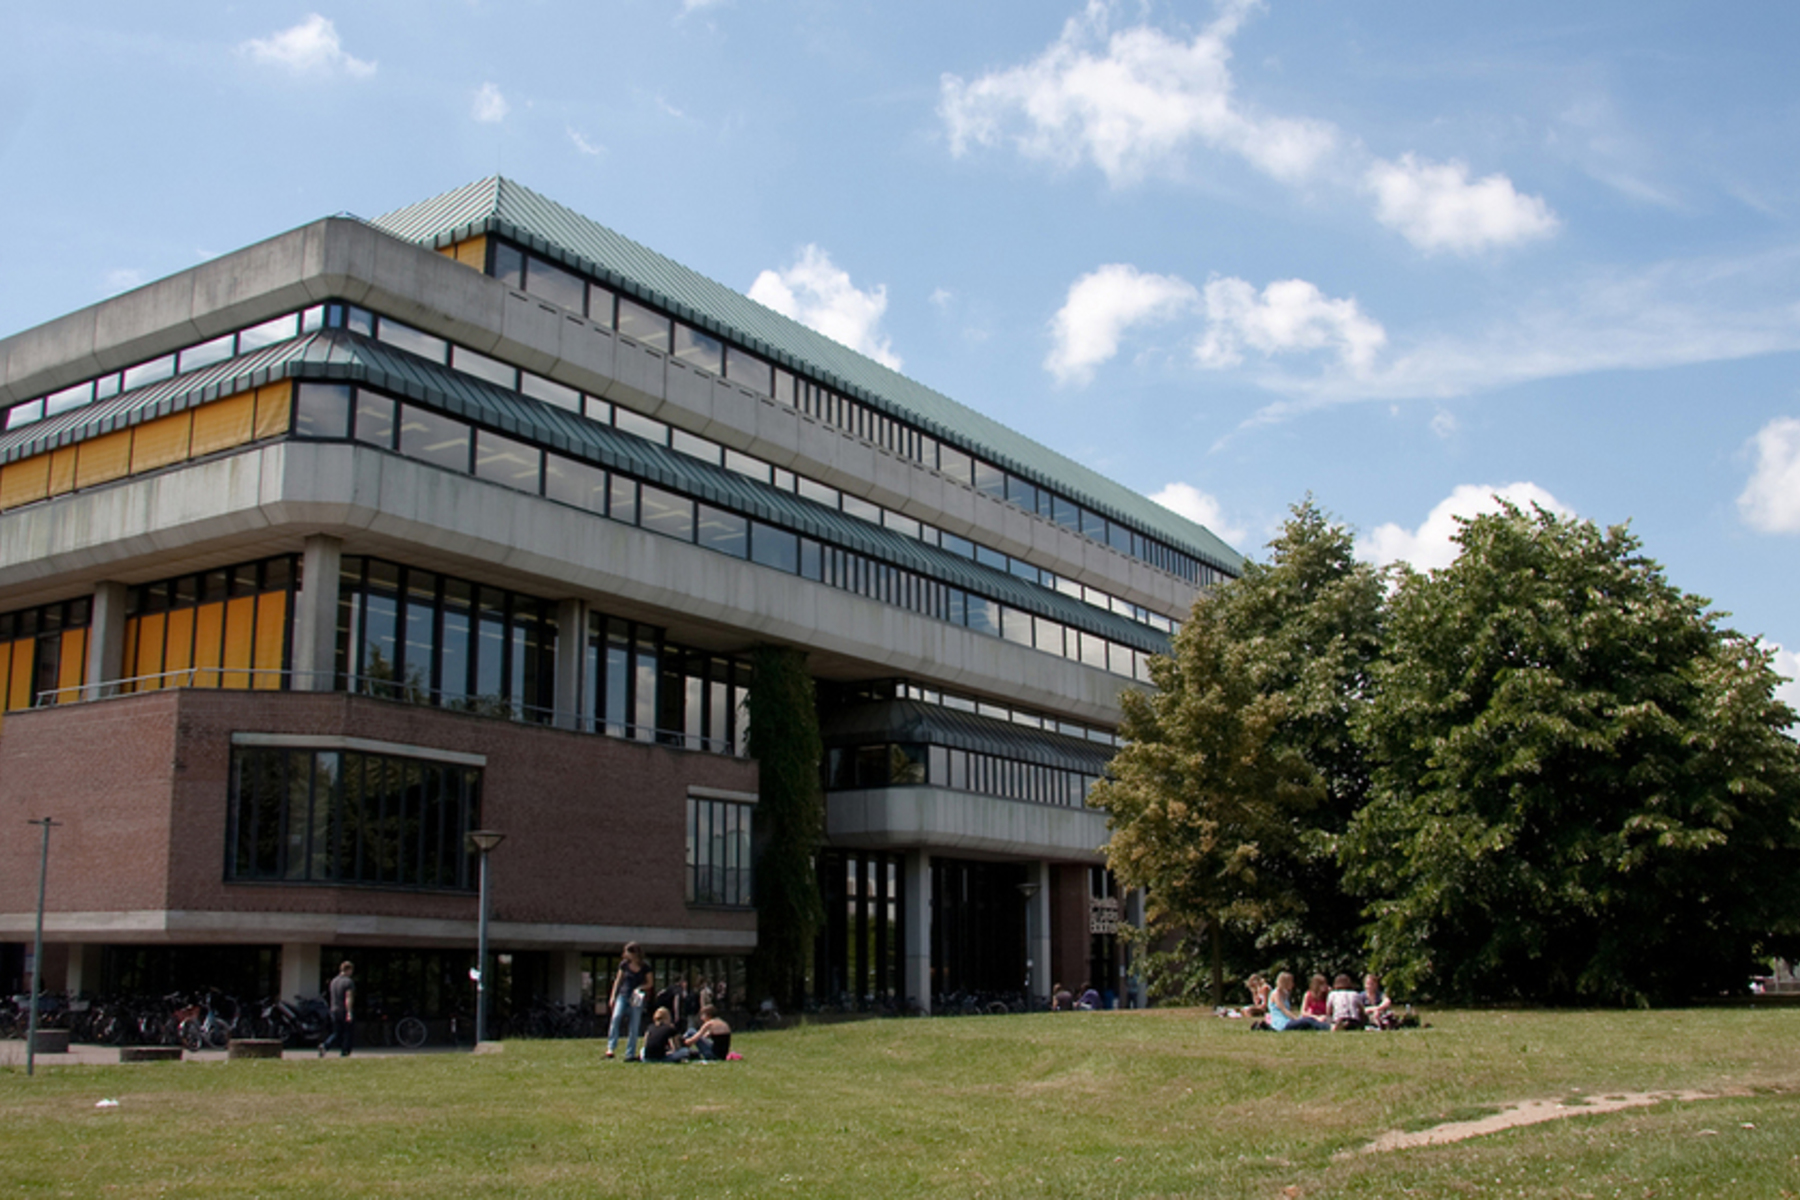 Heinrich-Heine-Universität Düsseldorf - University